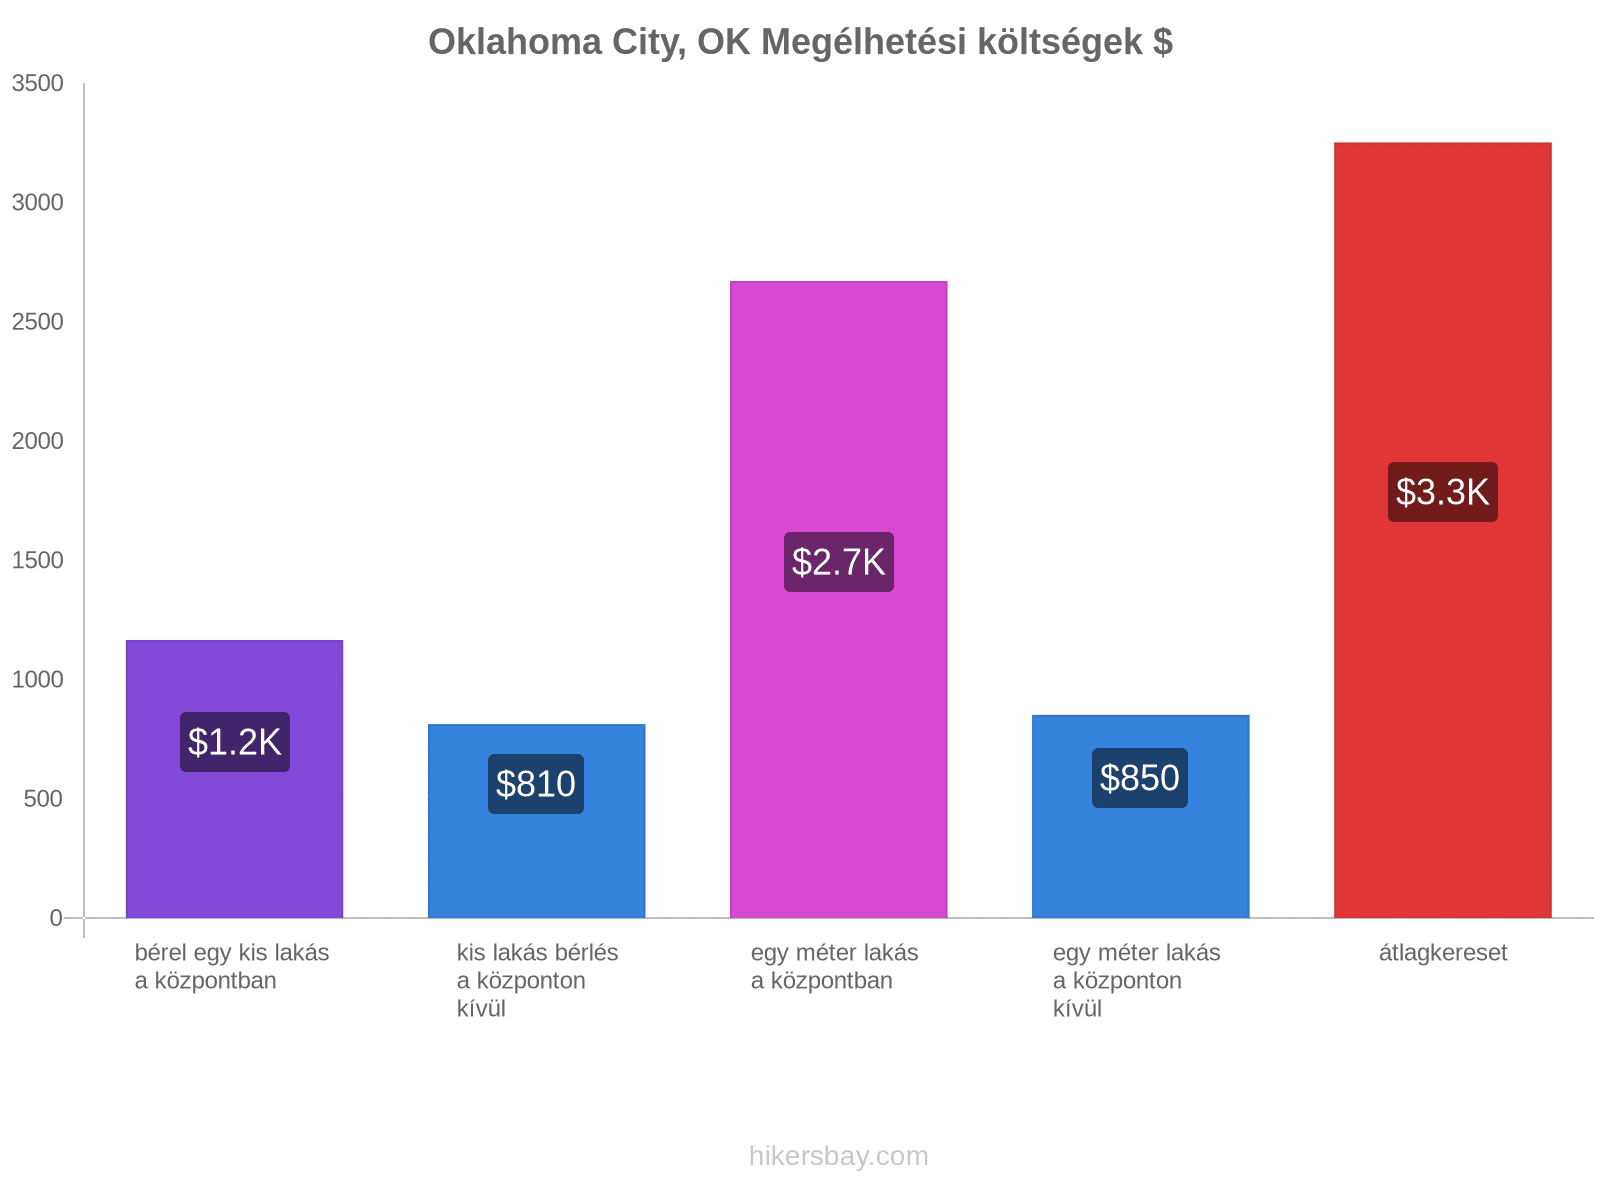 Oklahoma City, OK megélhetési költségek hikersbay.com